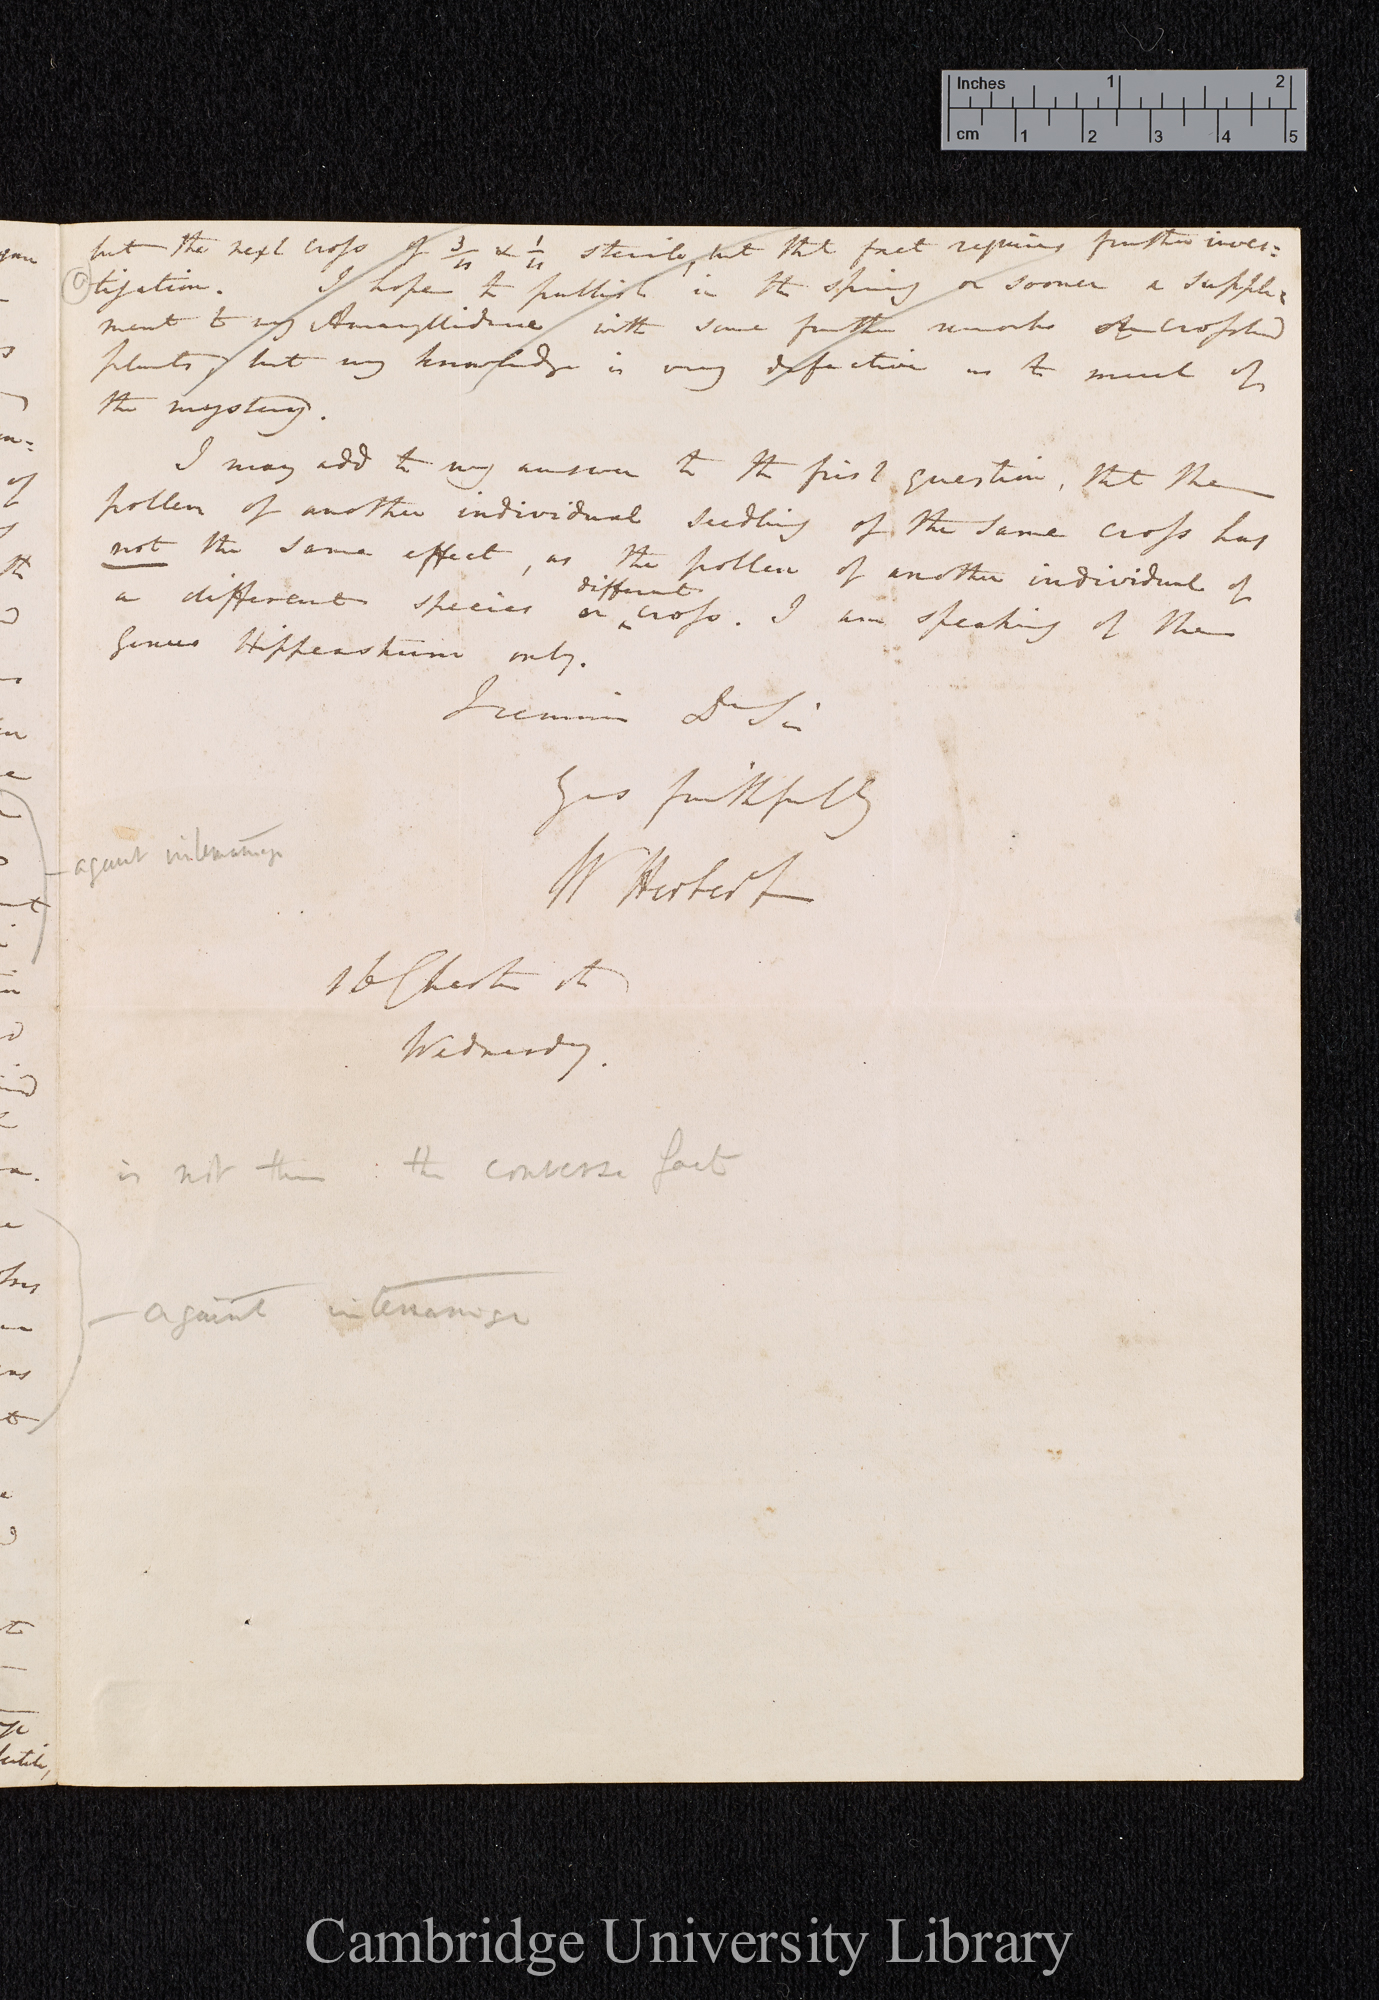 William Herbert to Charles Robert Darwin